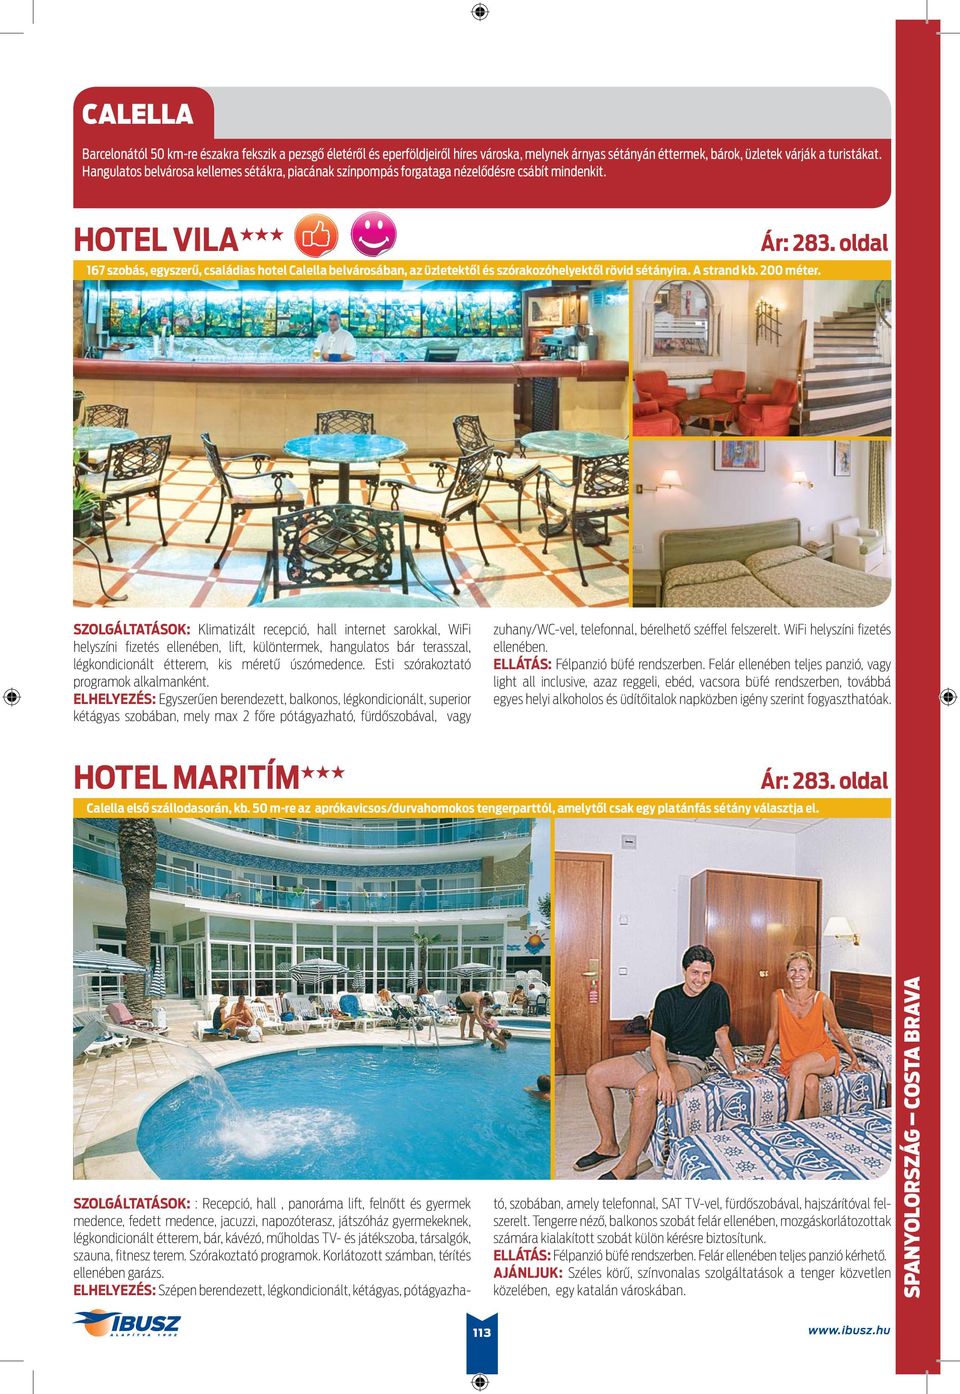 HOTEL VILA 167 szobás, egyszerű, családias hotel Calella belvárosában, az üzletektől és szórakozóhelyektől rövid sétányira. A strand kb. 200 méter.